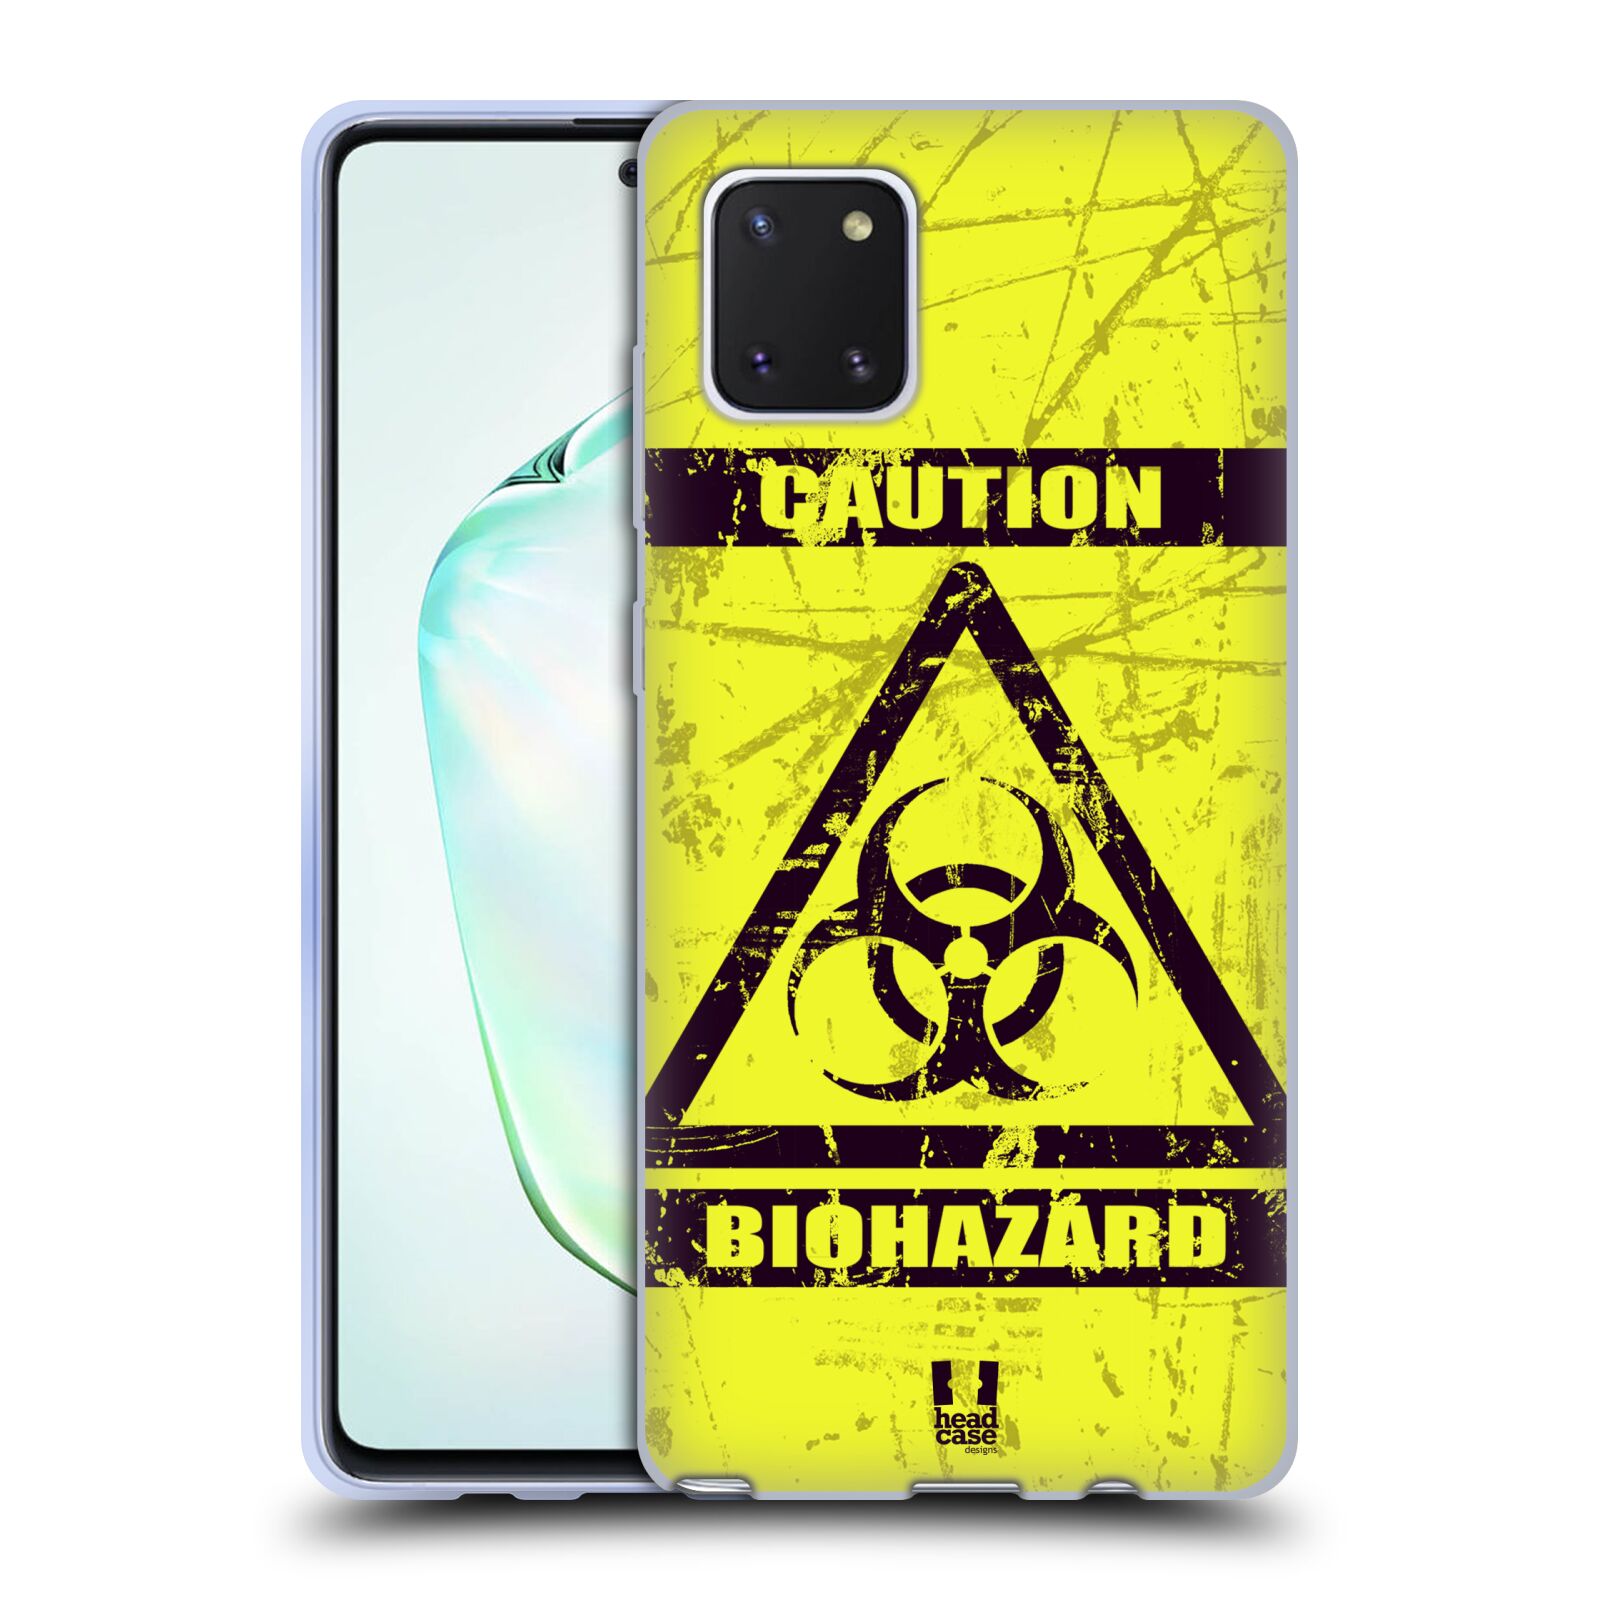 Silikonové pouzdro na mobil Samsung Galaxy Note 10 Lite - Head Case - BIOHAZARD